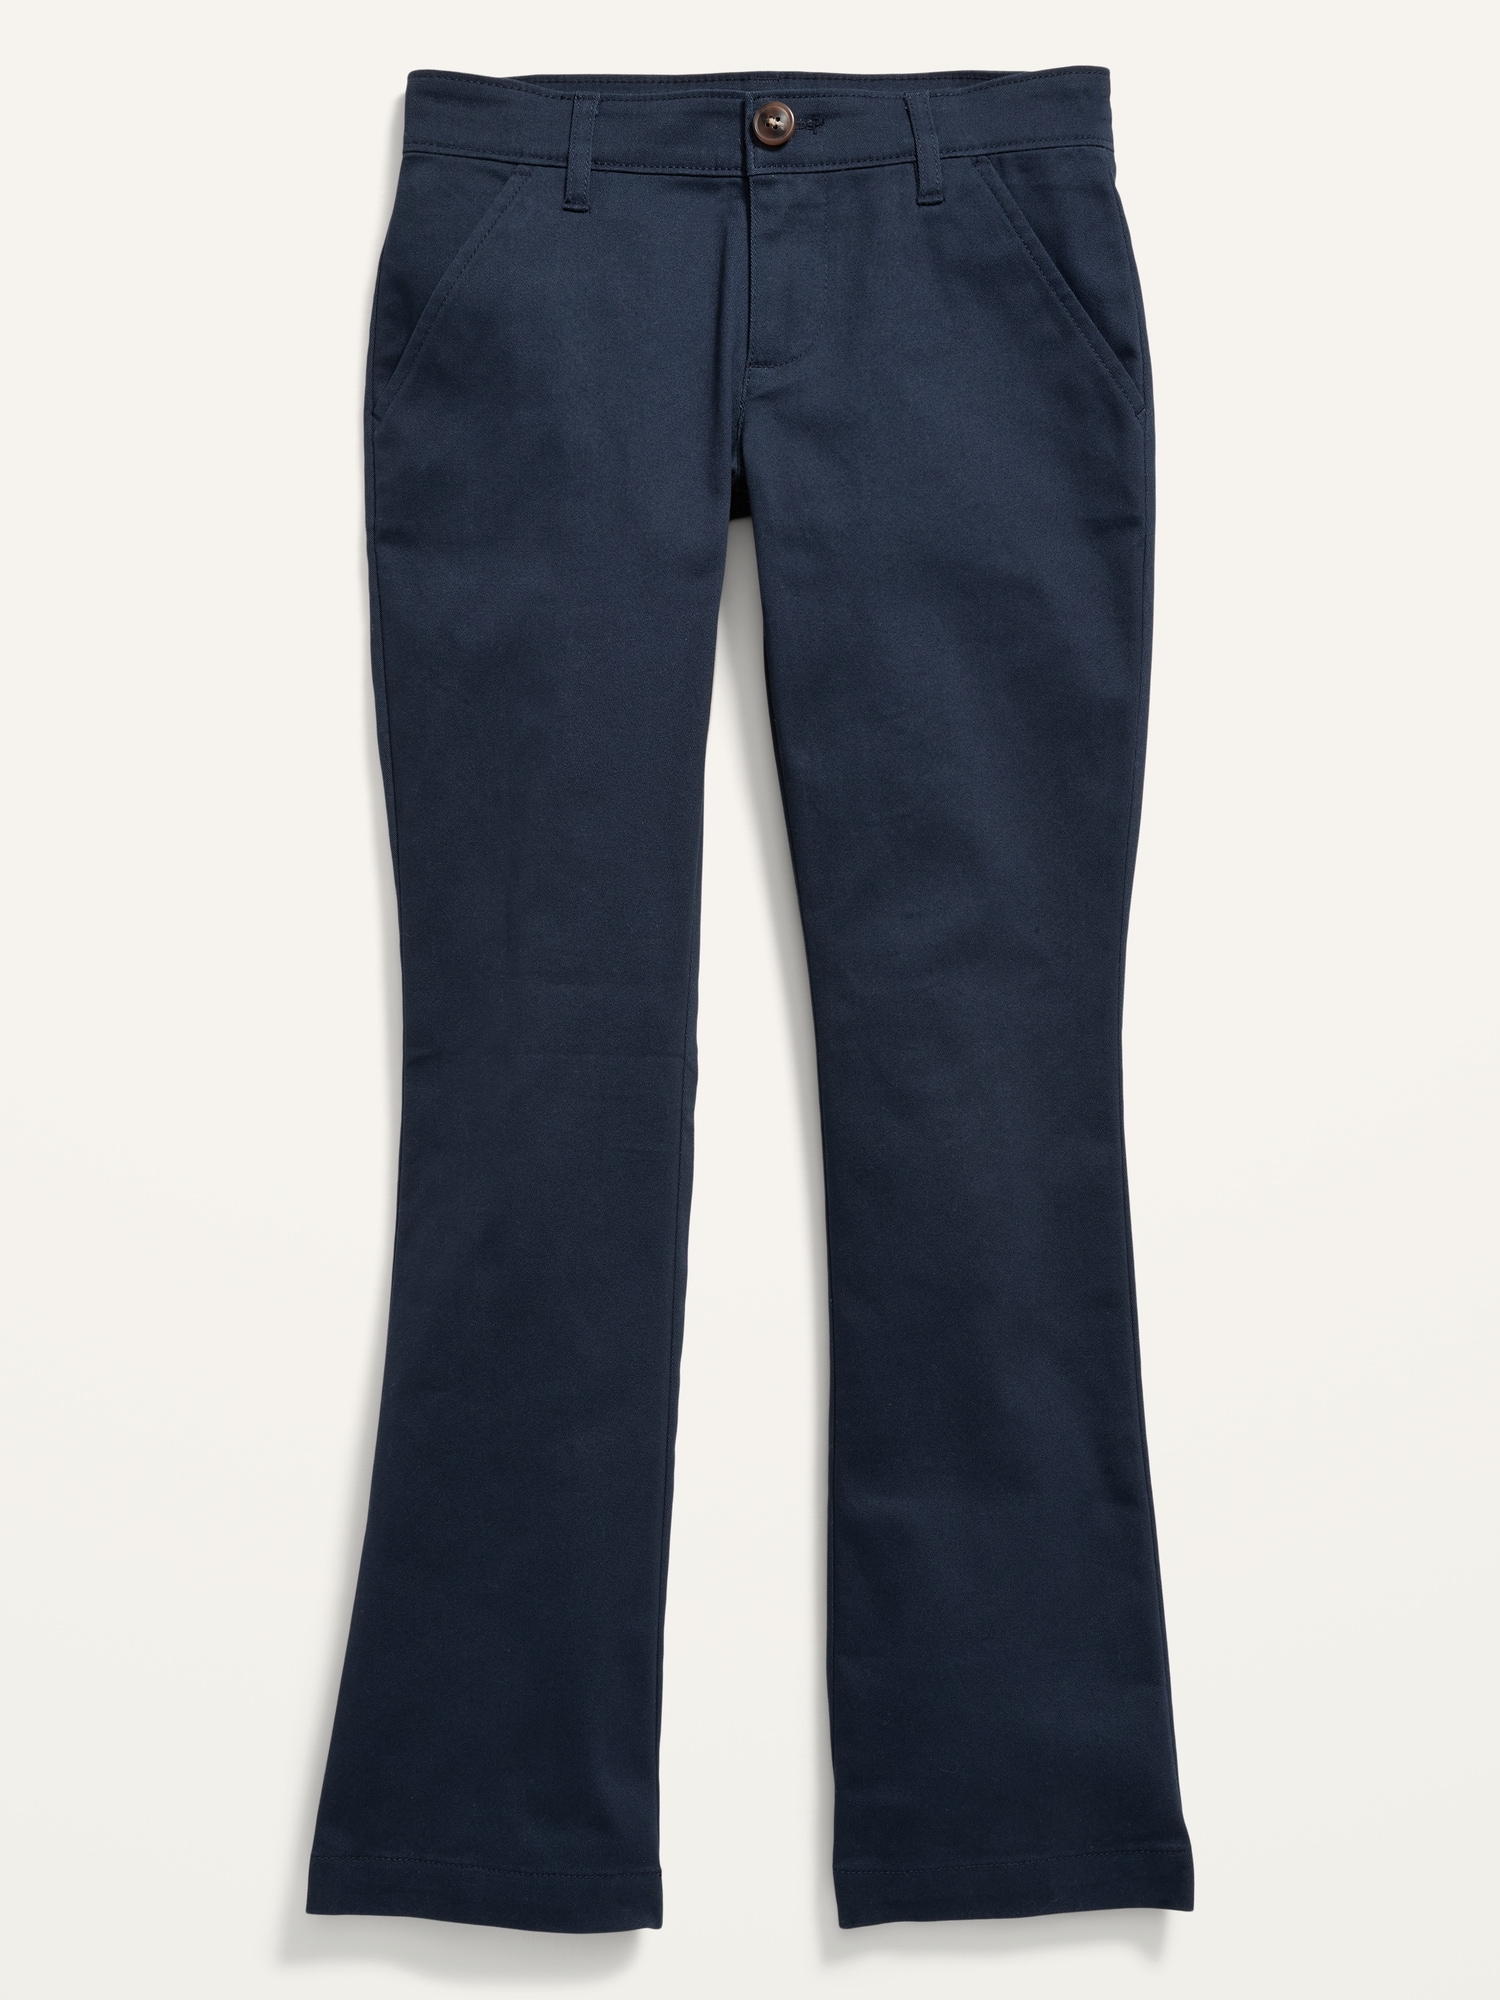 Old Navy Pants Women's Size 14 Tall Boot Cut Khaki Grey Pockets